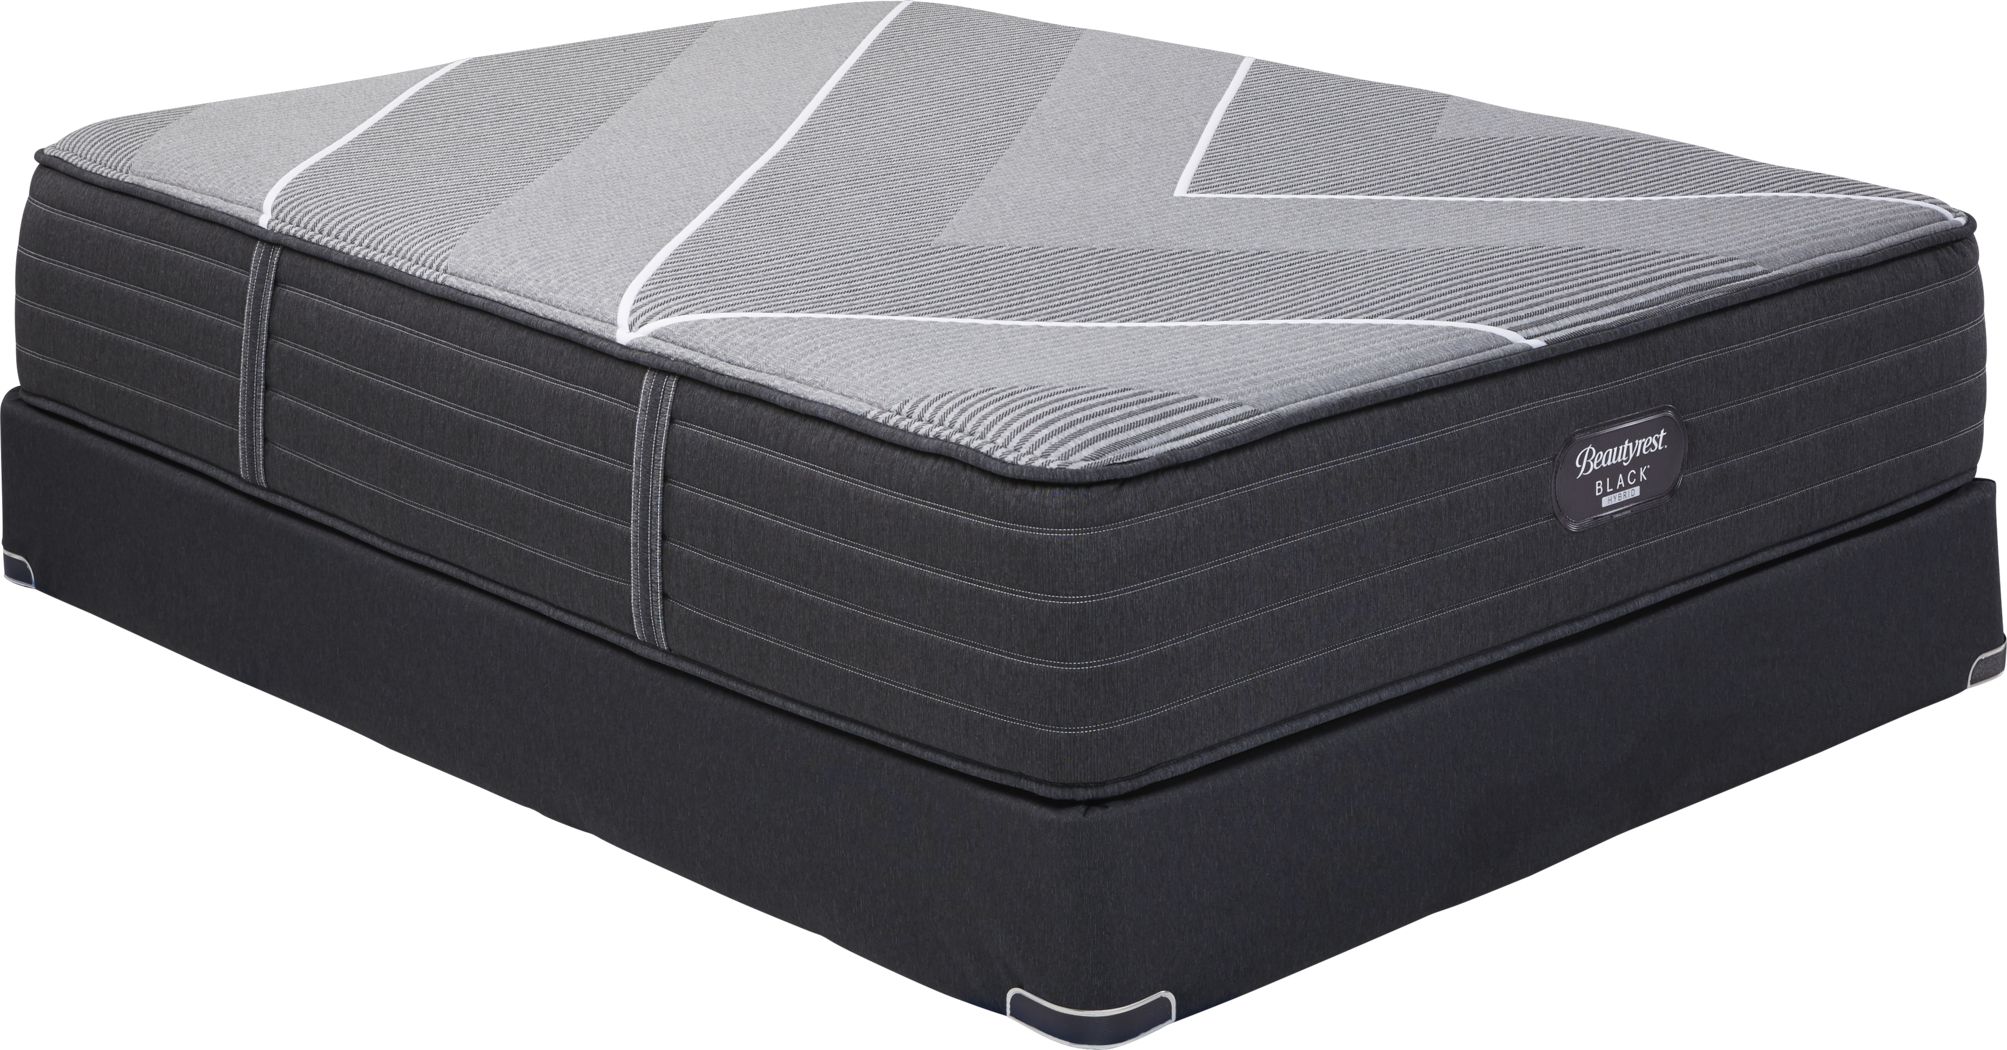 beautyrest hybrid mattress reviews